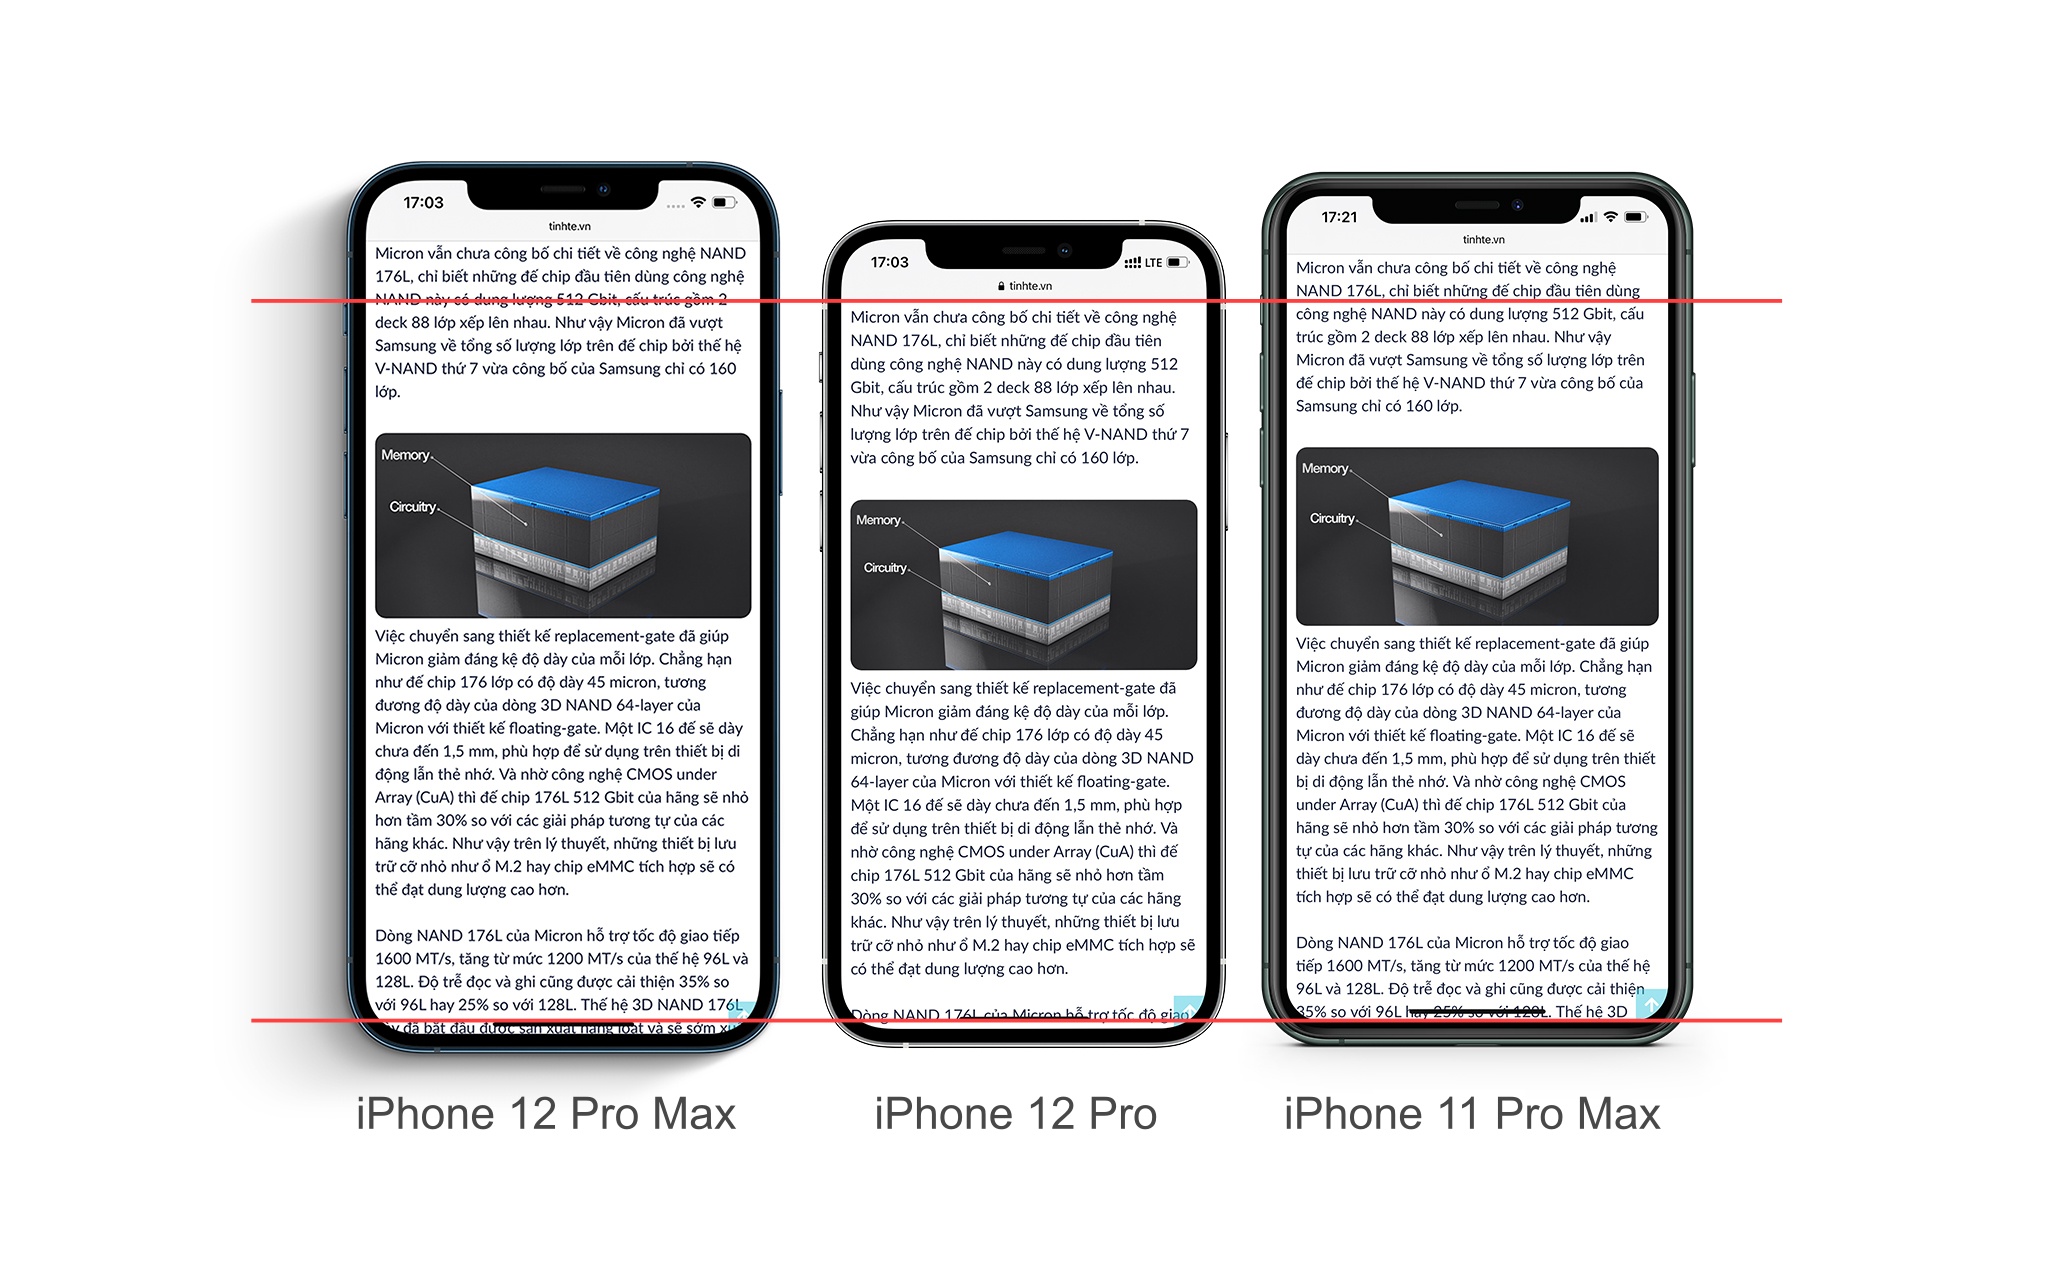 Bạn đã sẵn sàng để khám phá những thiết bị tuyệt vời nhất từ Apple? Với iPhone 12 Pro và iPhone 12 Pro Max, bạn sẽ được trải nghiệm những thiết kế đẹp mắt, tính năng tiên tiến và trải nghiệm tuyệt vời nhất khi sử dụng. Hãy cùng xem qua những hình ảnh được hiển thị về chiếc điện thoại này, để hiểu rõ hơn những tính năng và nguồn cảm hứng mà iPhone 12 Pro và iPhone 12 Pro Max có thể mang đến cho cuộc sống của bạn!